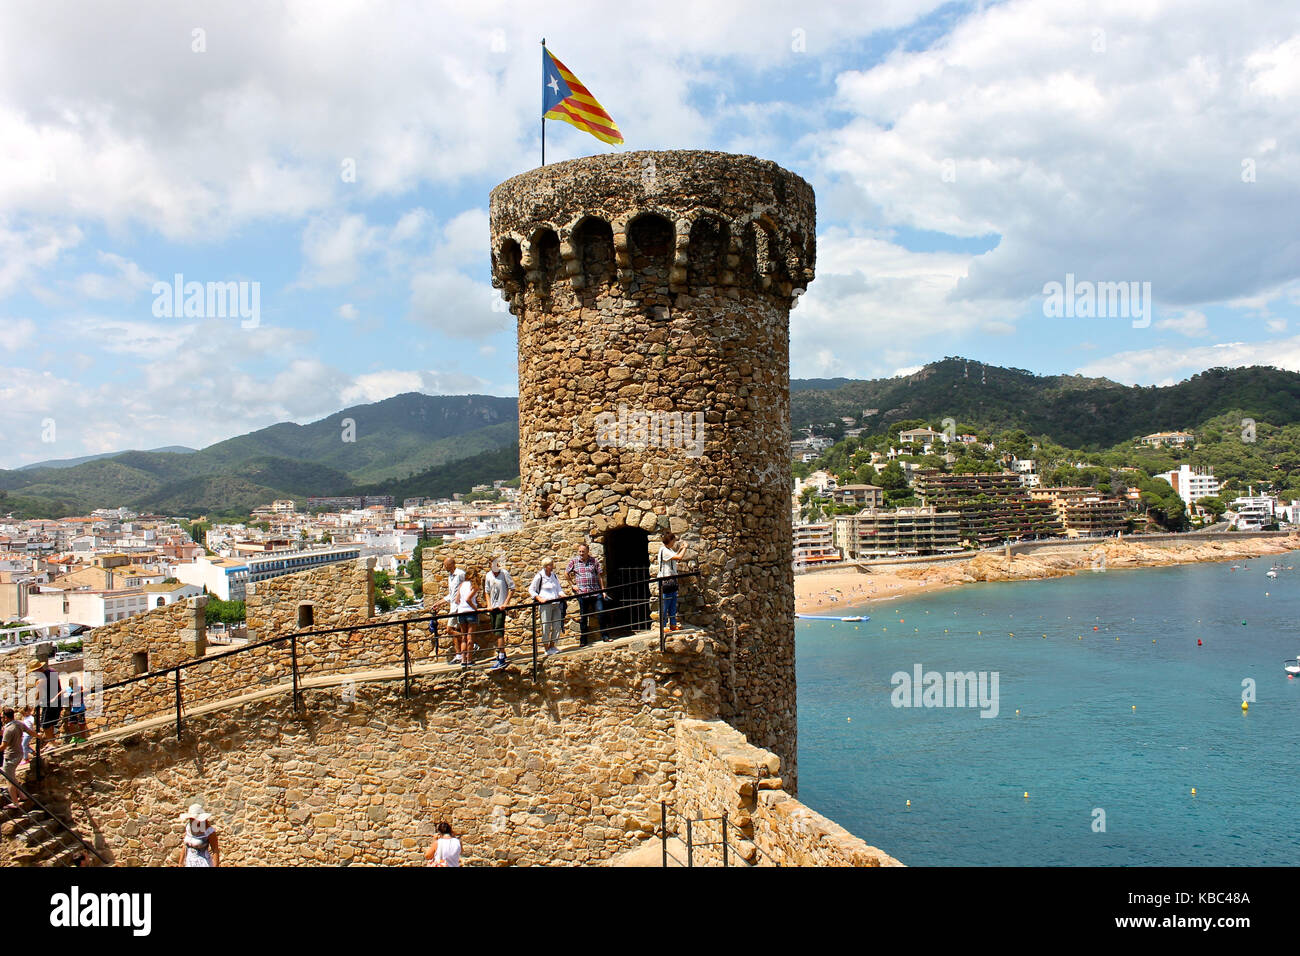 Une senyera ESTELADA Drapeau non officiel, le généralement pilotés par des partisans de l'indépendance catalane, agitant sur la tour de la forteresse de Tossa de mar, Catalogne, s Banque D'Images